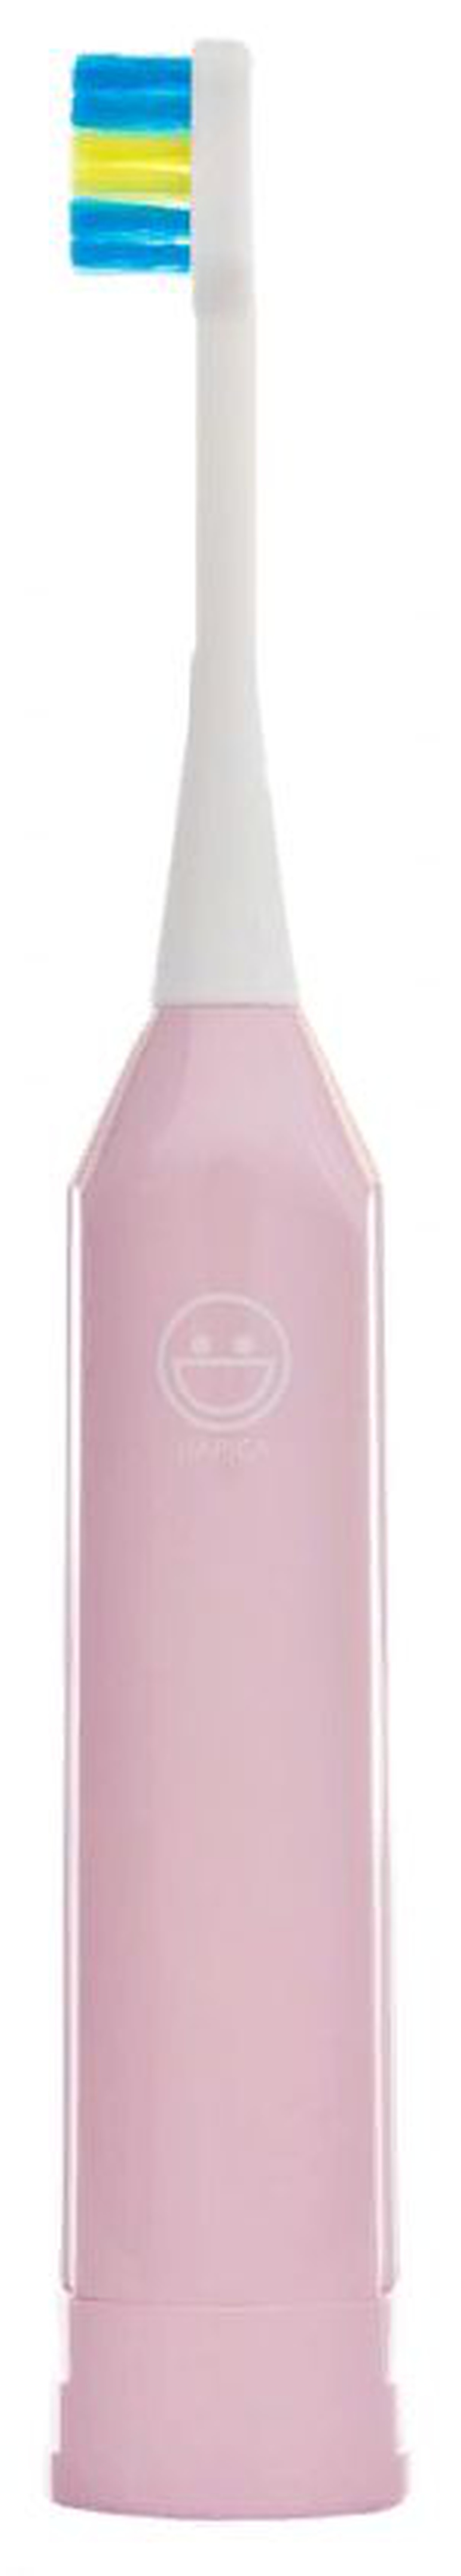 Электрическая зубная щетка Hapica Kids DBK-1, розовая фото